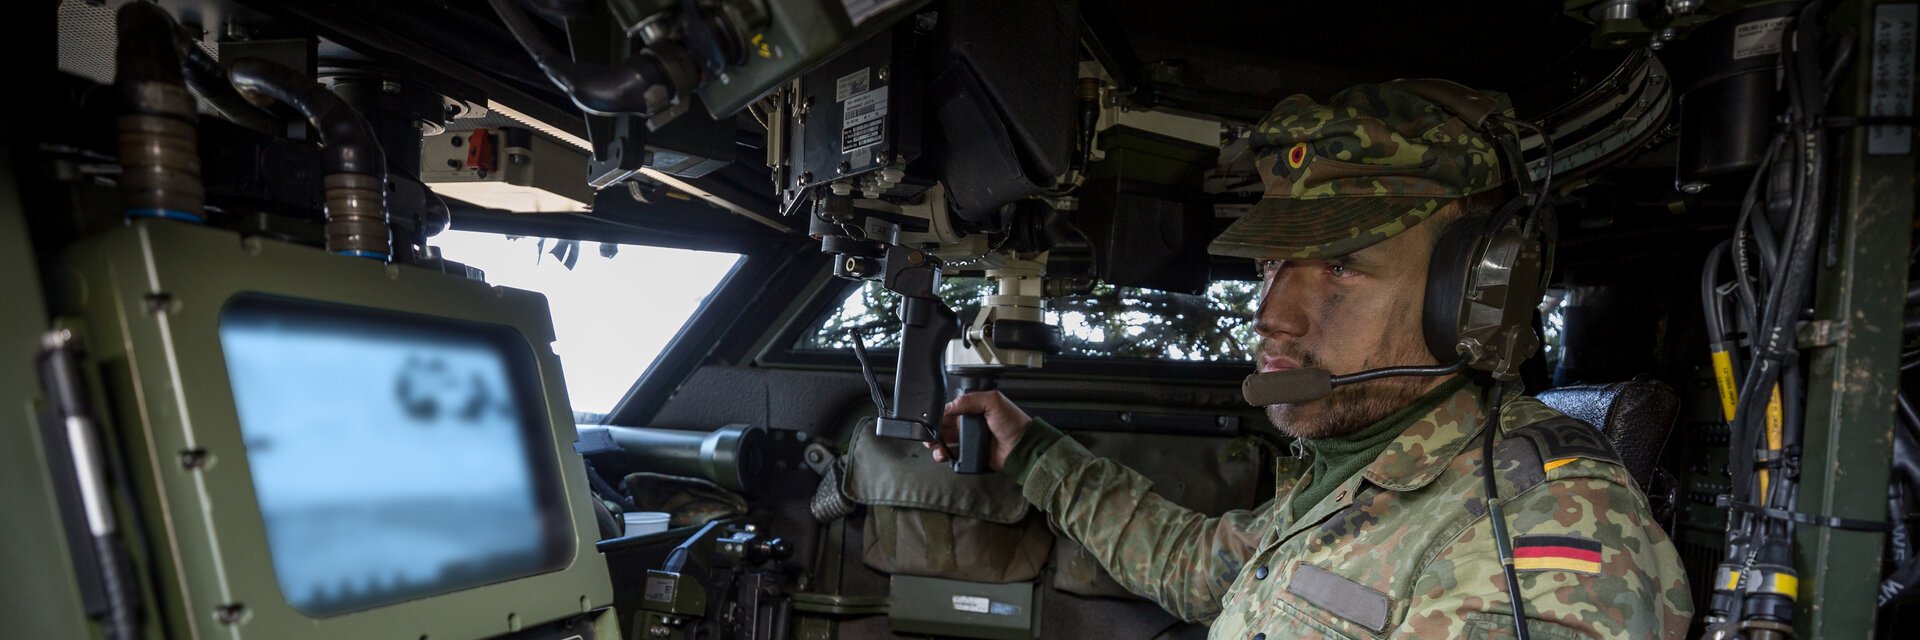 Ein Soldat der HeeresaufklÃ¤rungstruppe sitzt in einem gepanzerten Fahrzeug und bedient technisches GerÃ¤t.